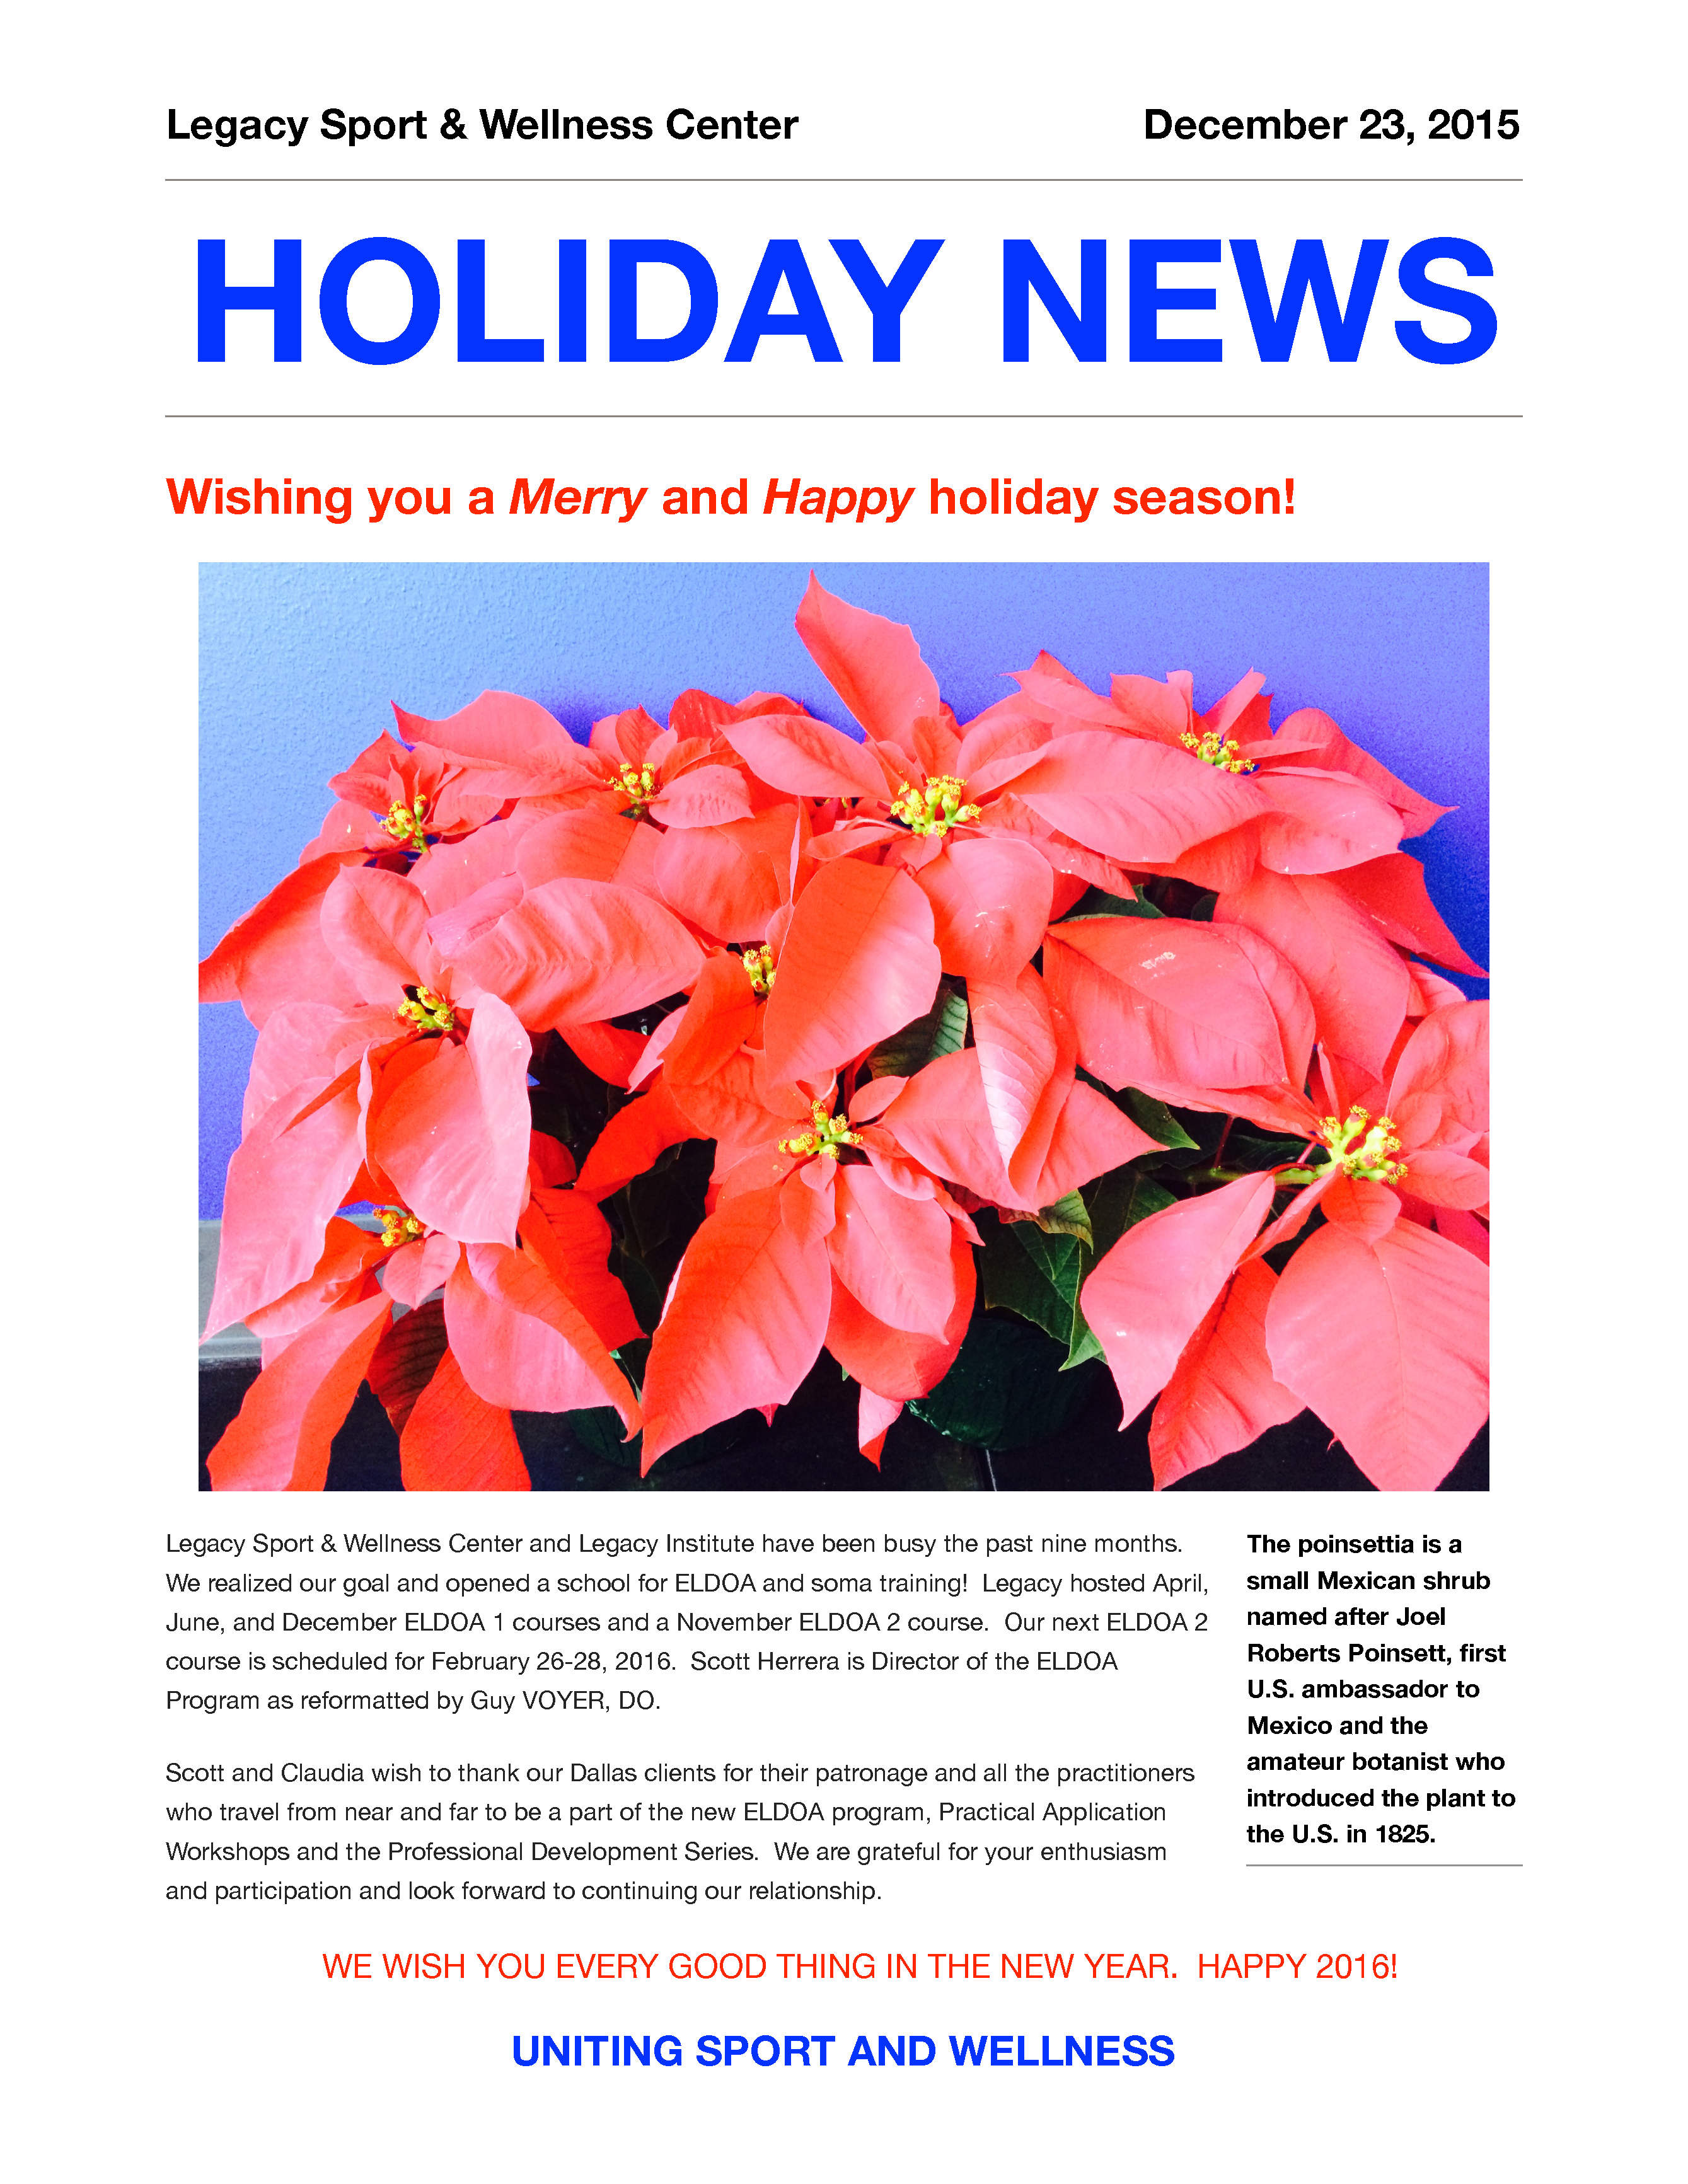 Holiday News 12/23/2015